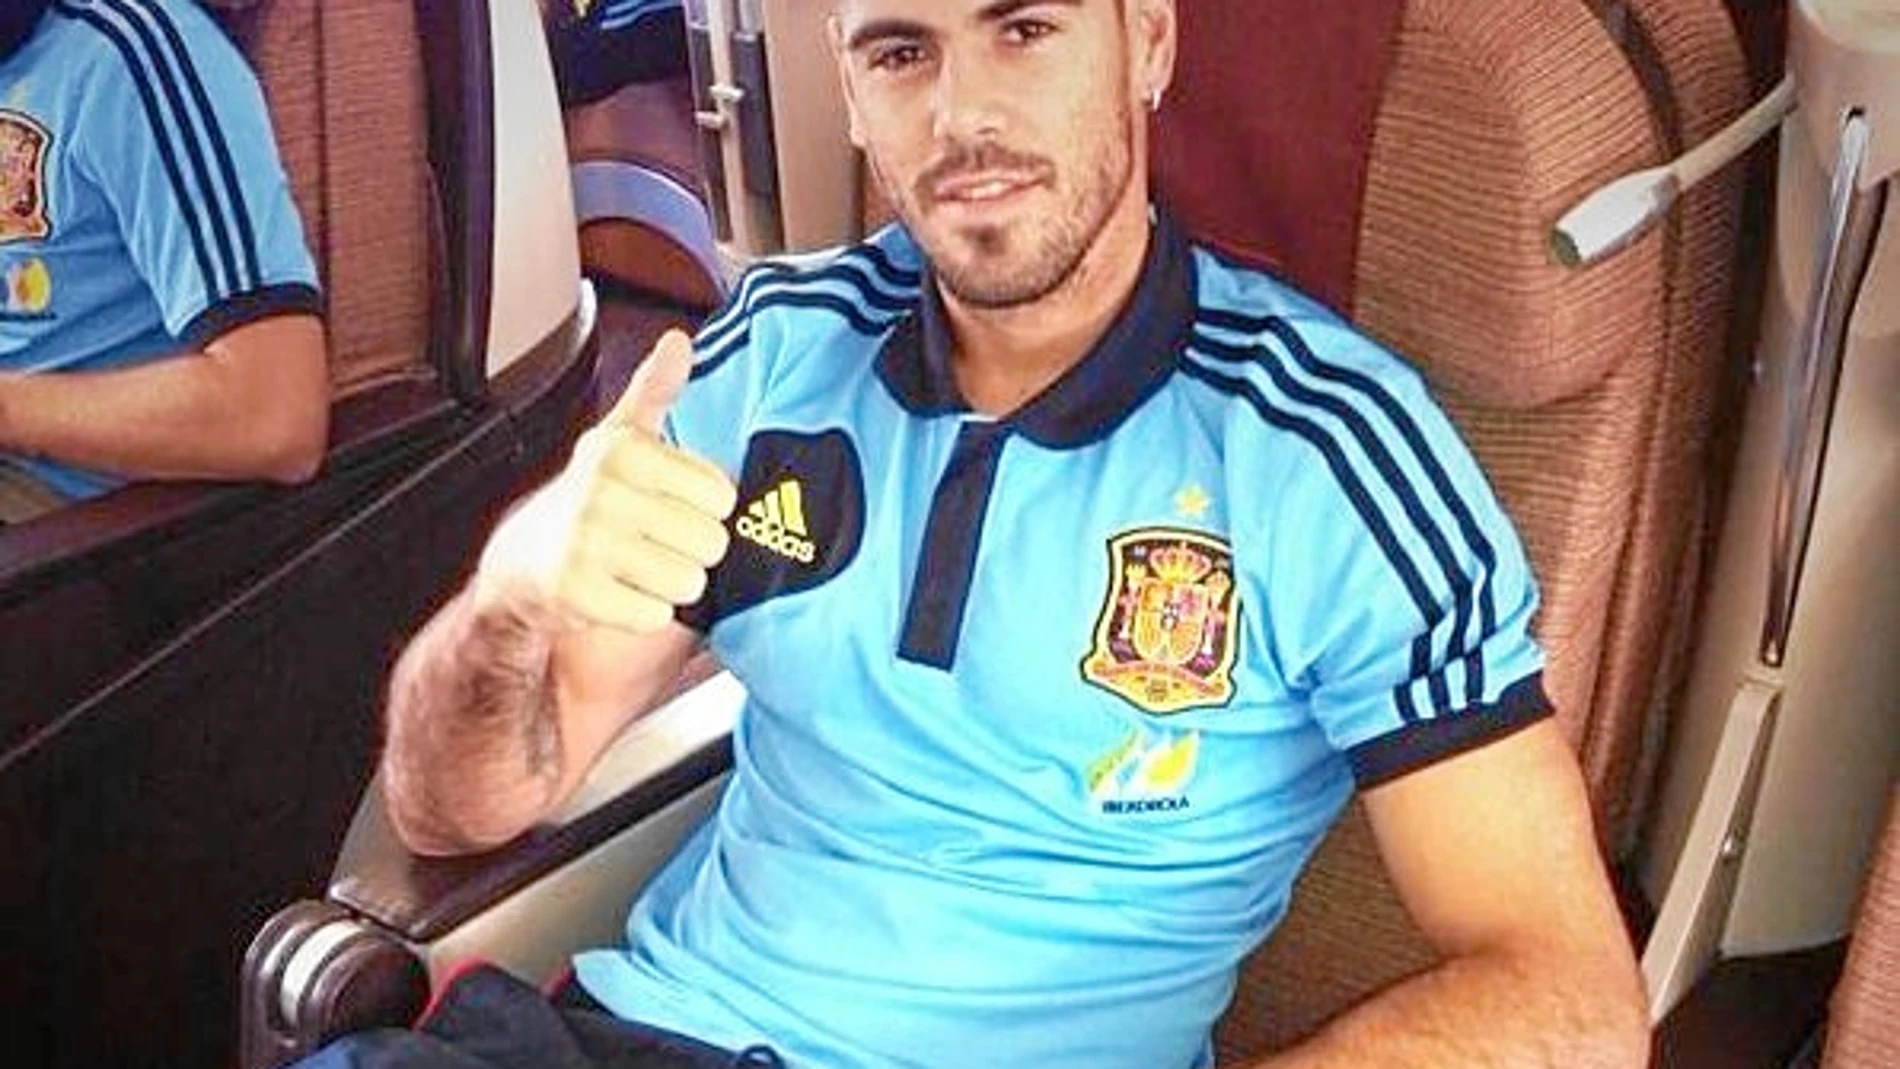 Valdés saluda en el avión antes de partir a Ecuador